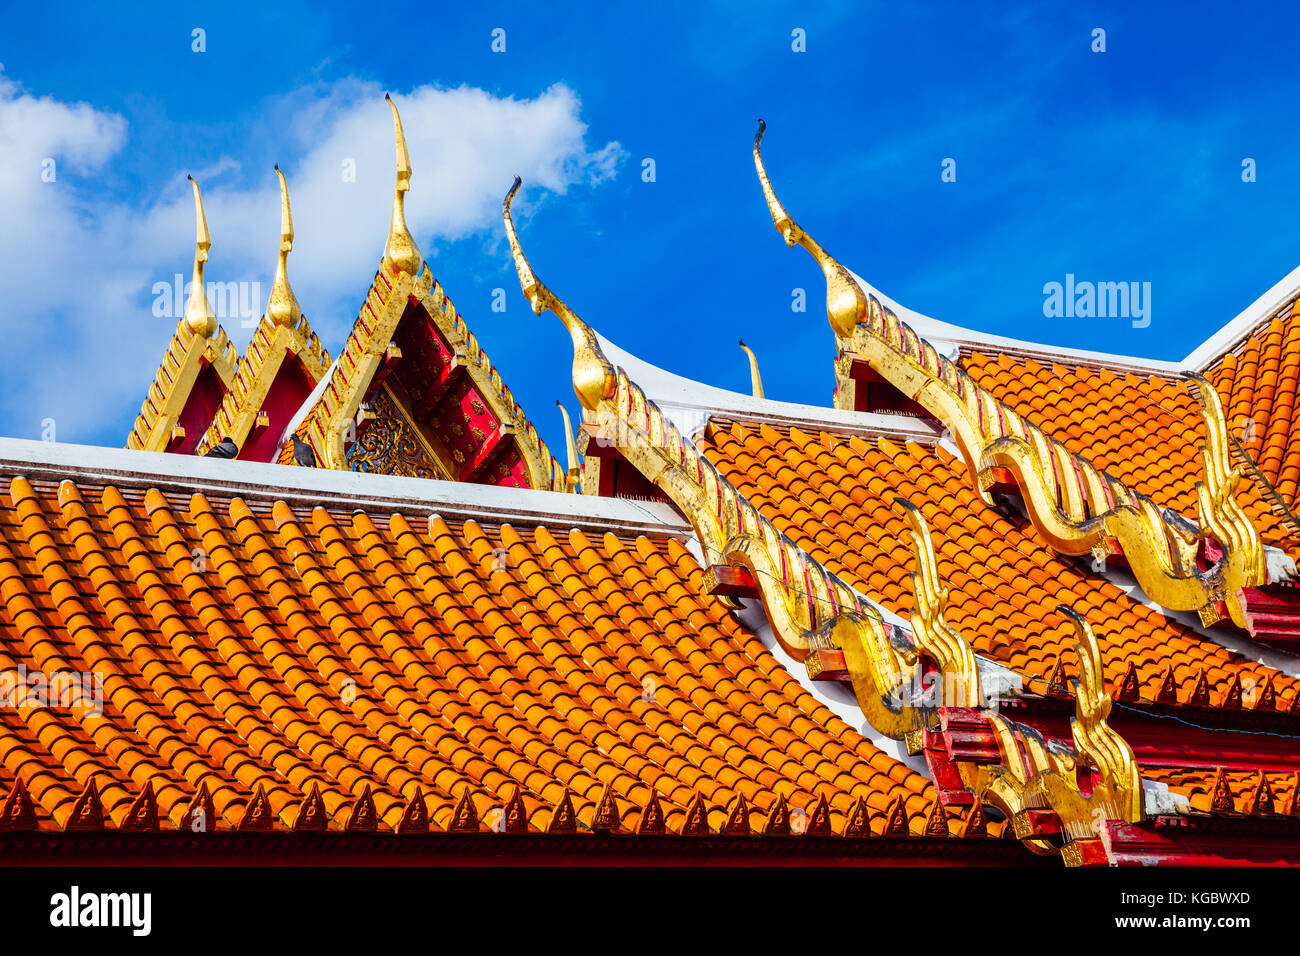 Bangkok, Thaïlande - 10 septembre 2016 : détails architecturaux de Wat Benchamabophit également connu sous le nom de temple de marbre sur septemper 10, 2016 à Bangkok, Thaïlande Banque D'Images